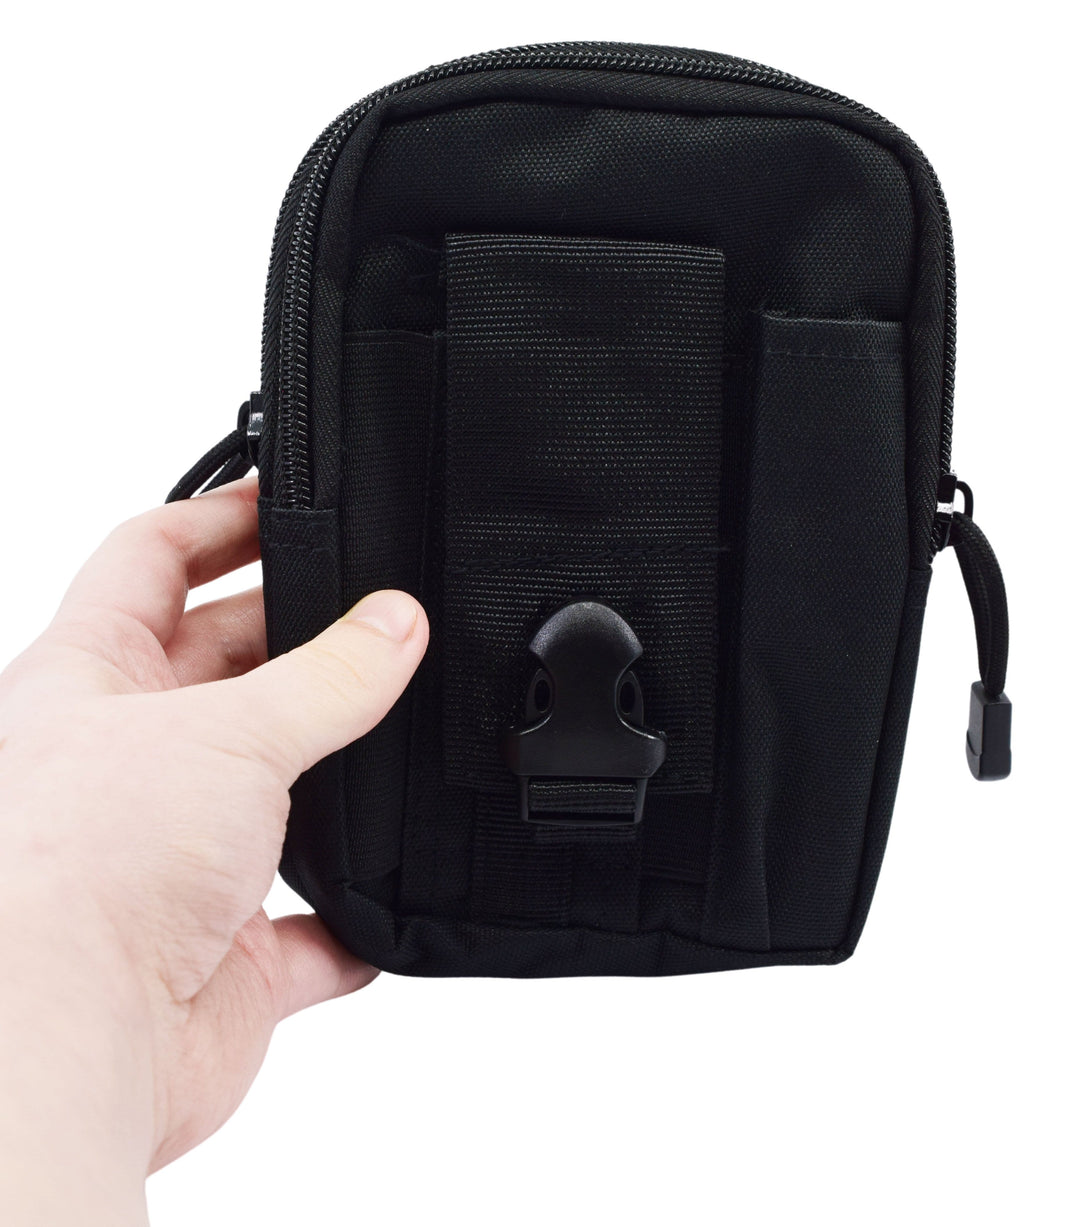 Teak Tuning Large Fingerboard Travel/Carry Bag - Black